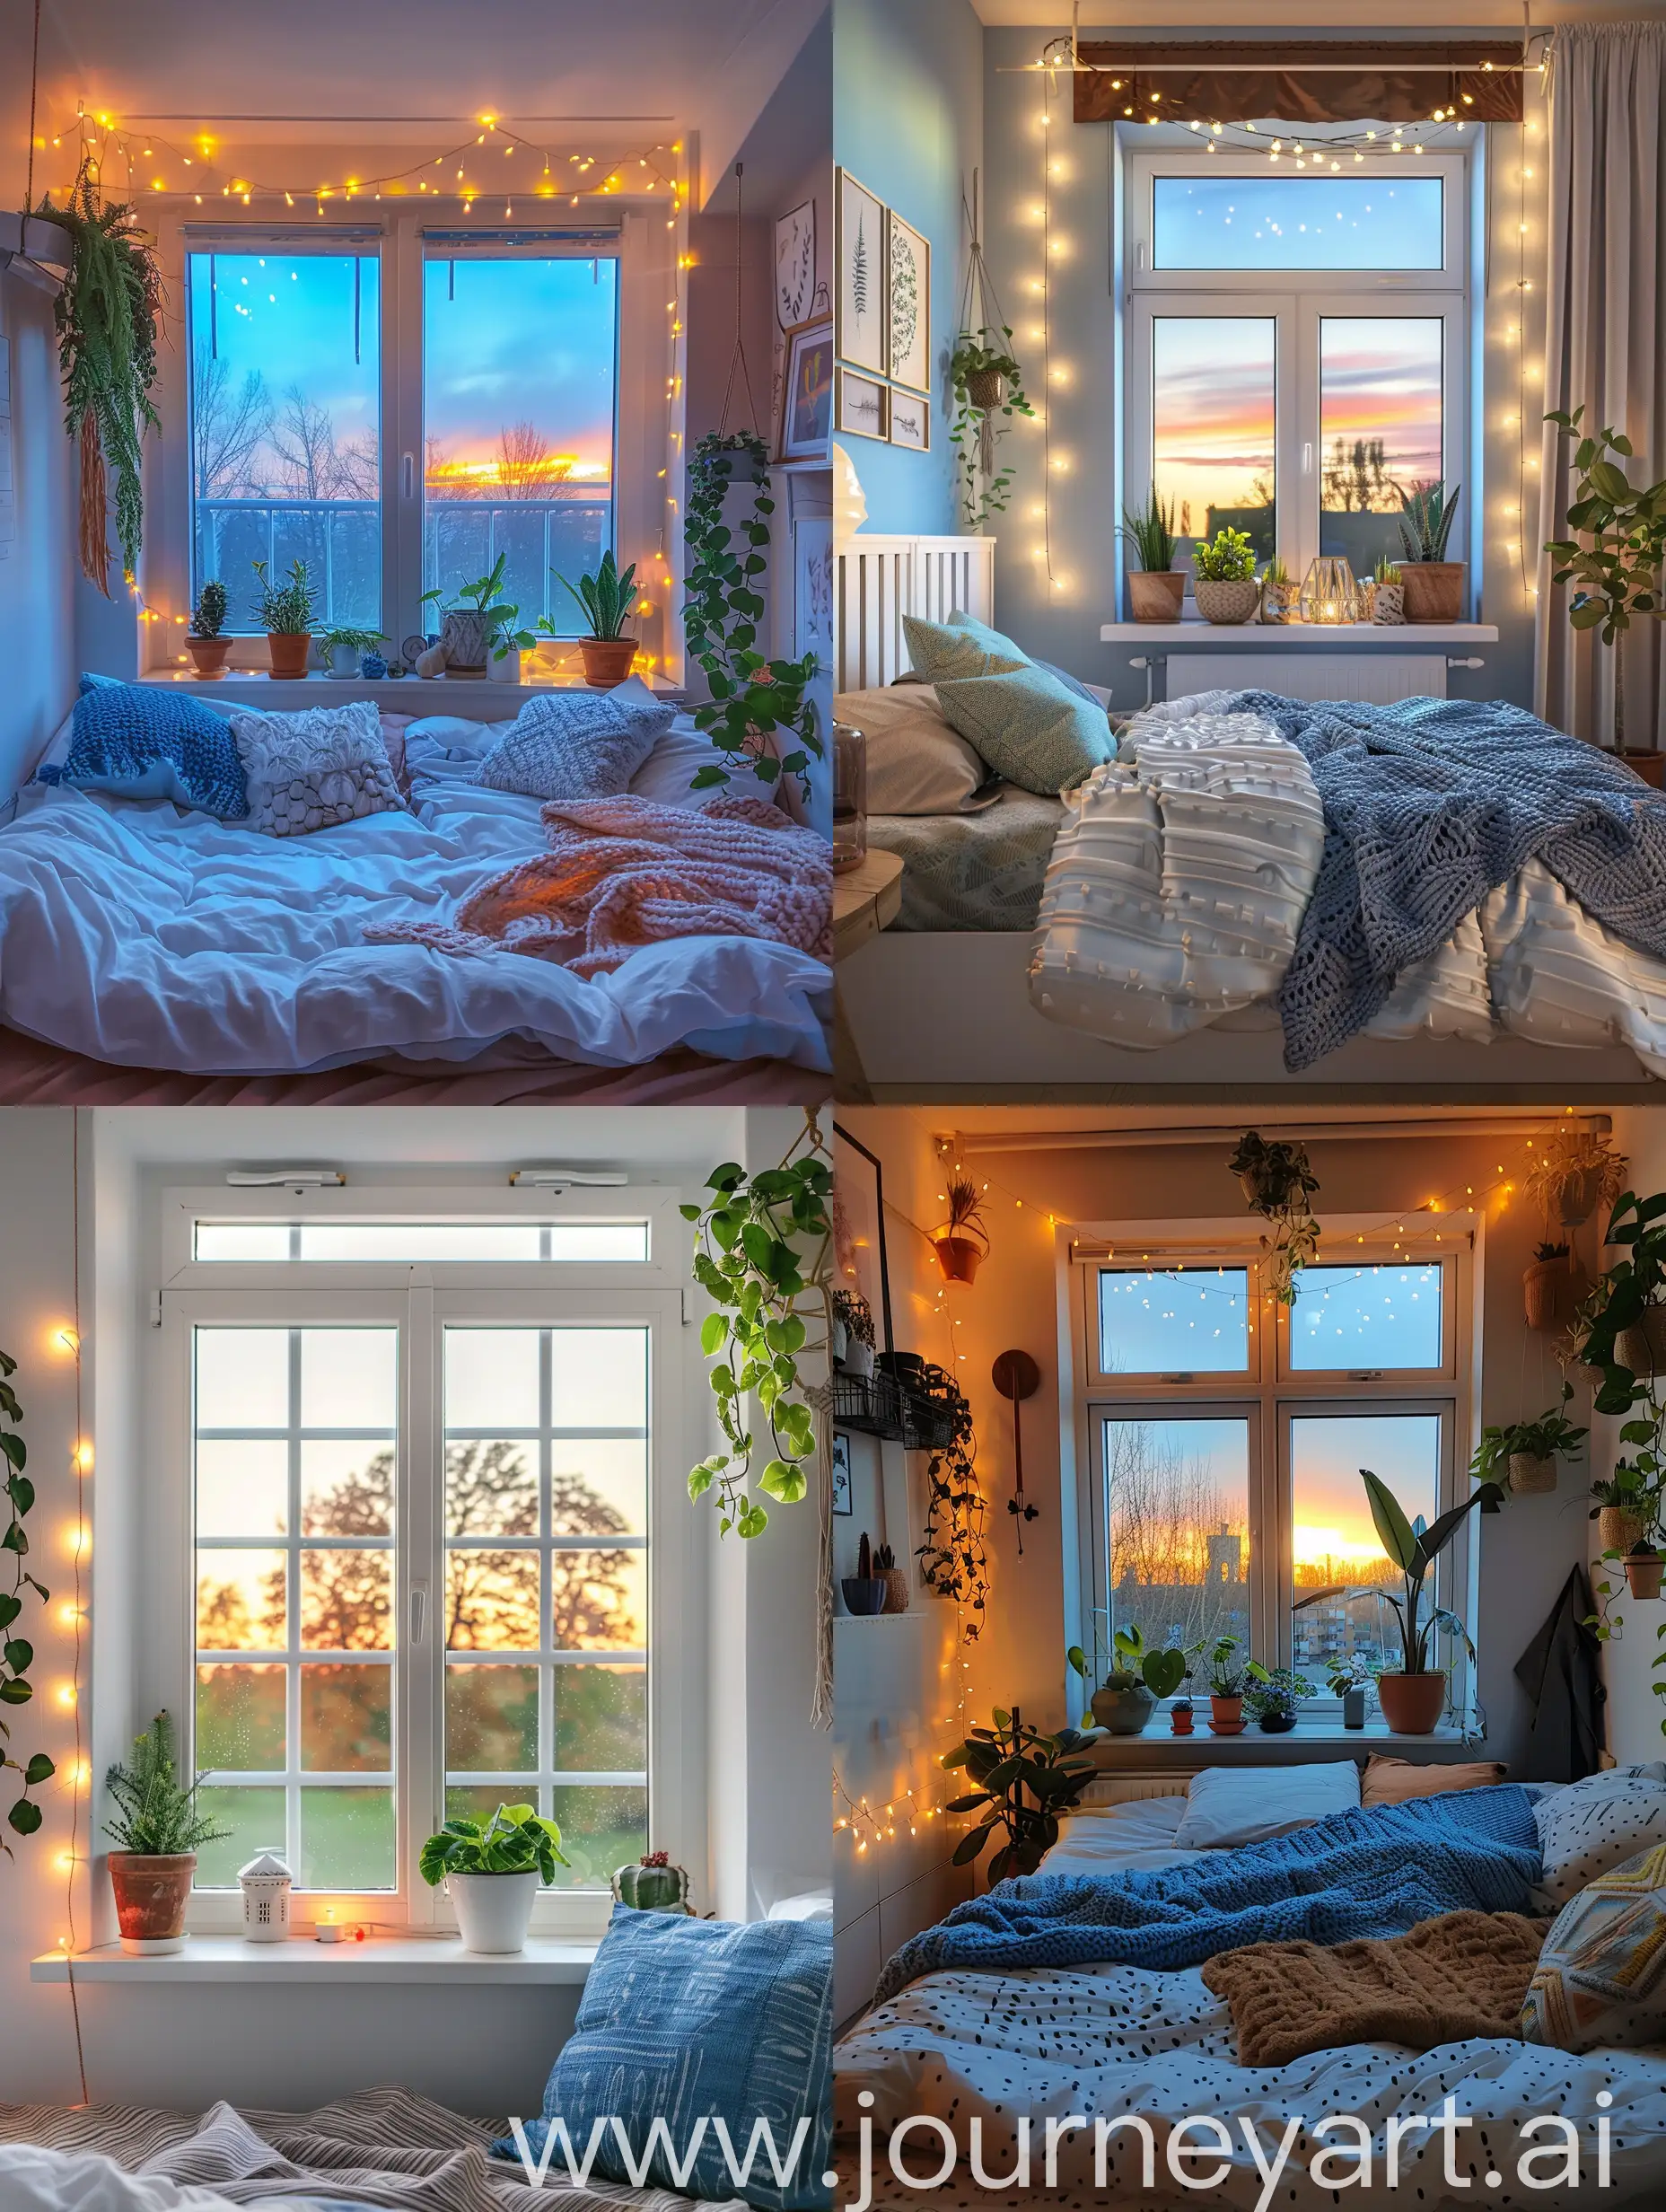 ScandinavianStyle-Bedroom-with-Sunset-View-Window